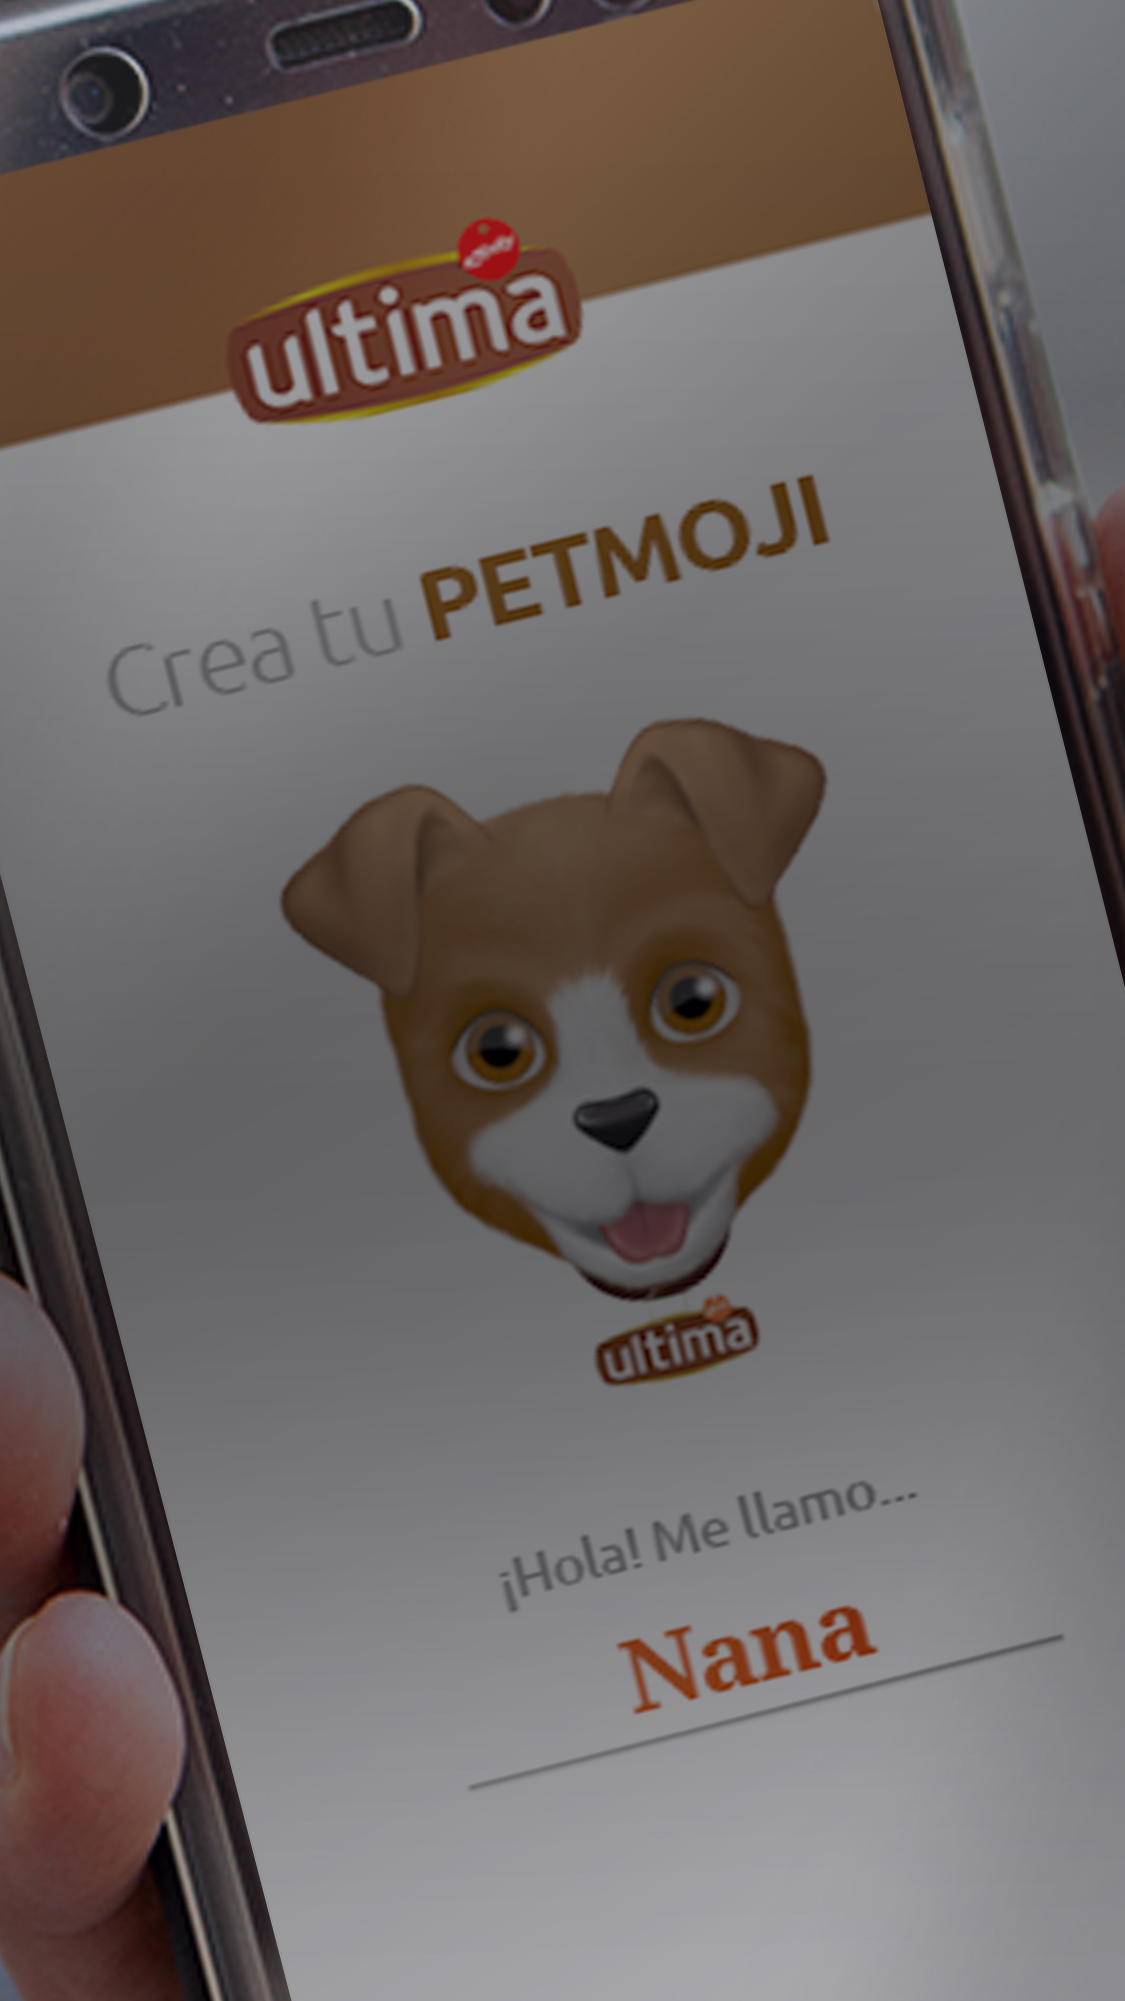 ¡Bienvenido al creador de <span>PETMOJIS</span>! Escoge perro o gato, personaliza sus detalles y compártelo por Whatsapp.